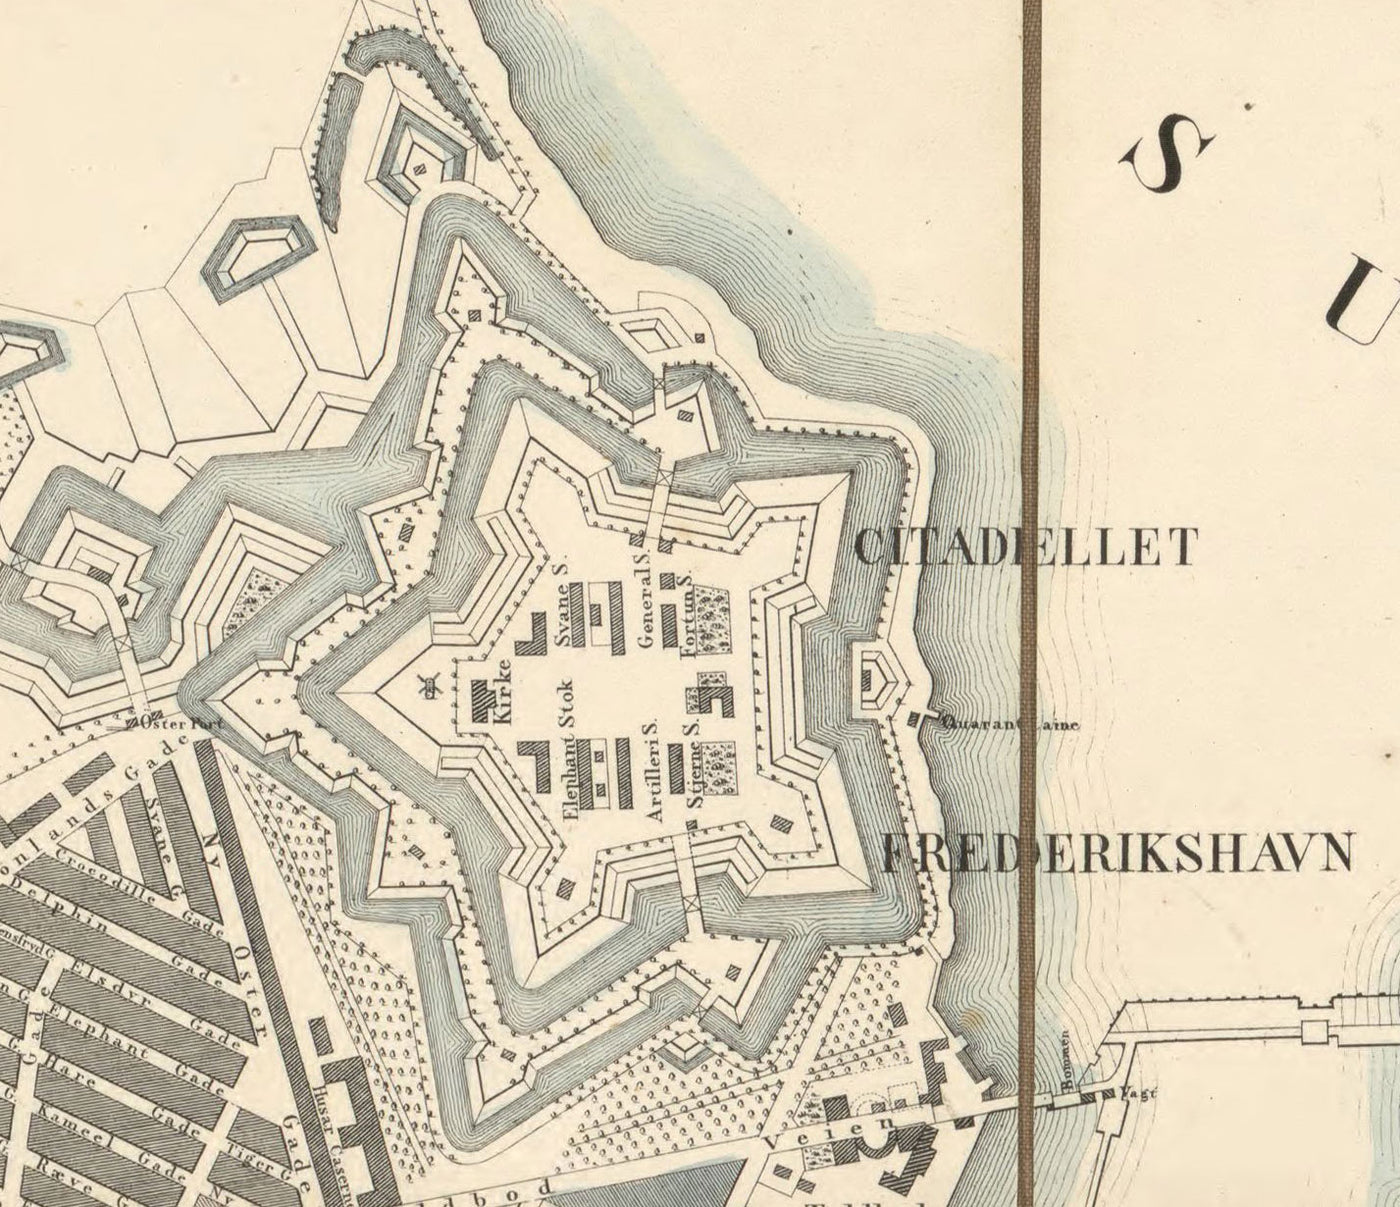 Alte Straßenkarte von Kopenhagen im Jahr 1853 von Millard Fillmore - Borsen, Holmen, Kastellet, Christianshavn, Slotsholmen